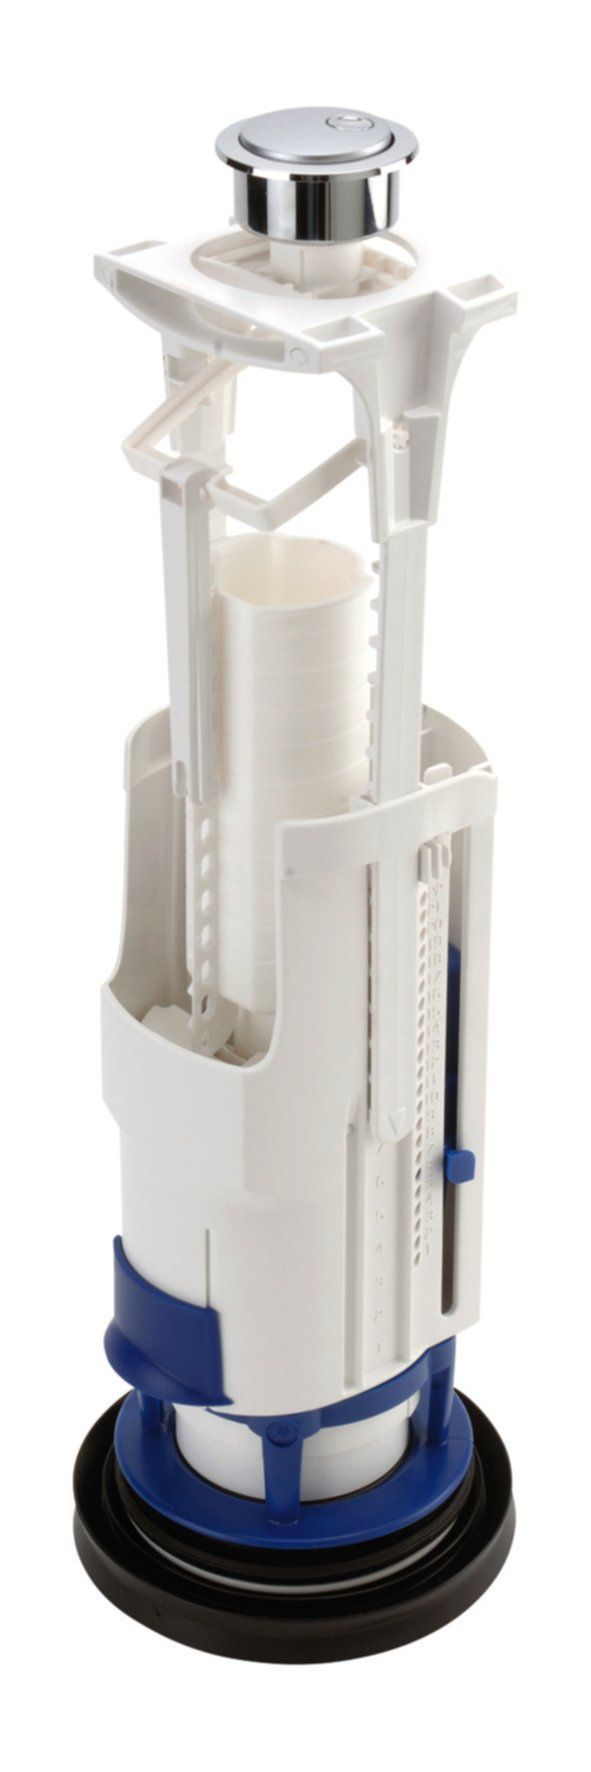 Wassersparender Doppelvolumen-WC-Mechanismus mit Bügel, Bohrung Ø 40 mm.